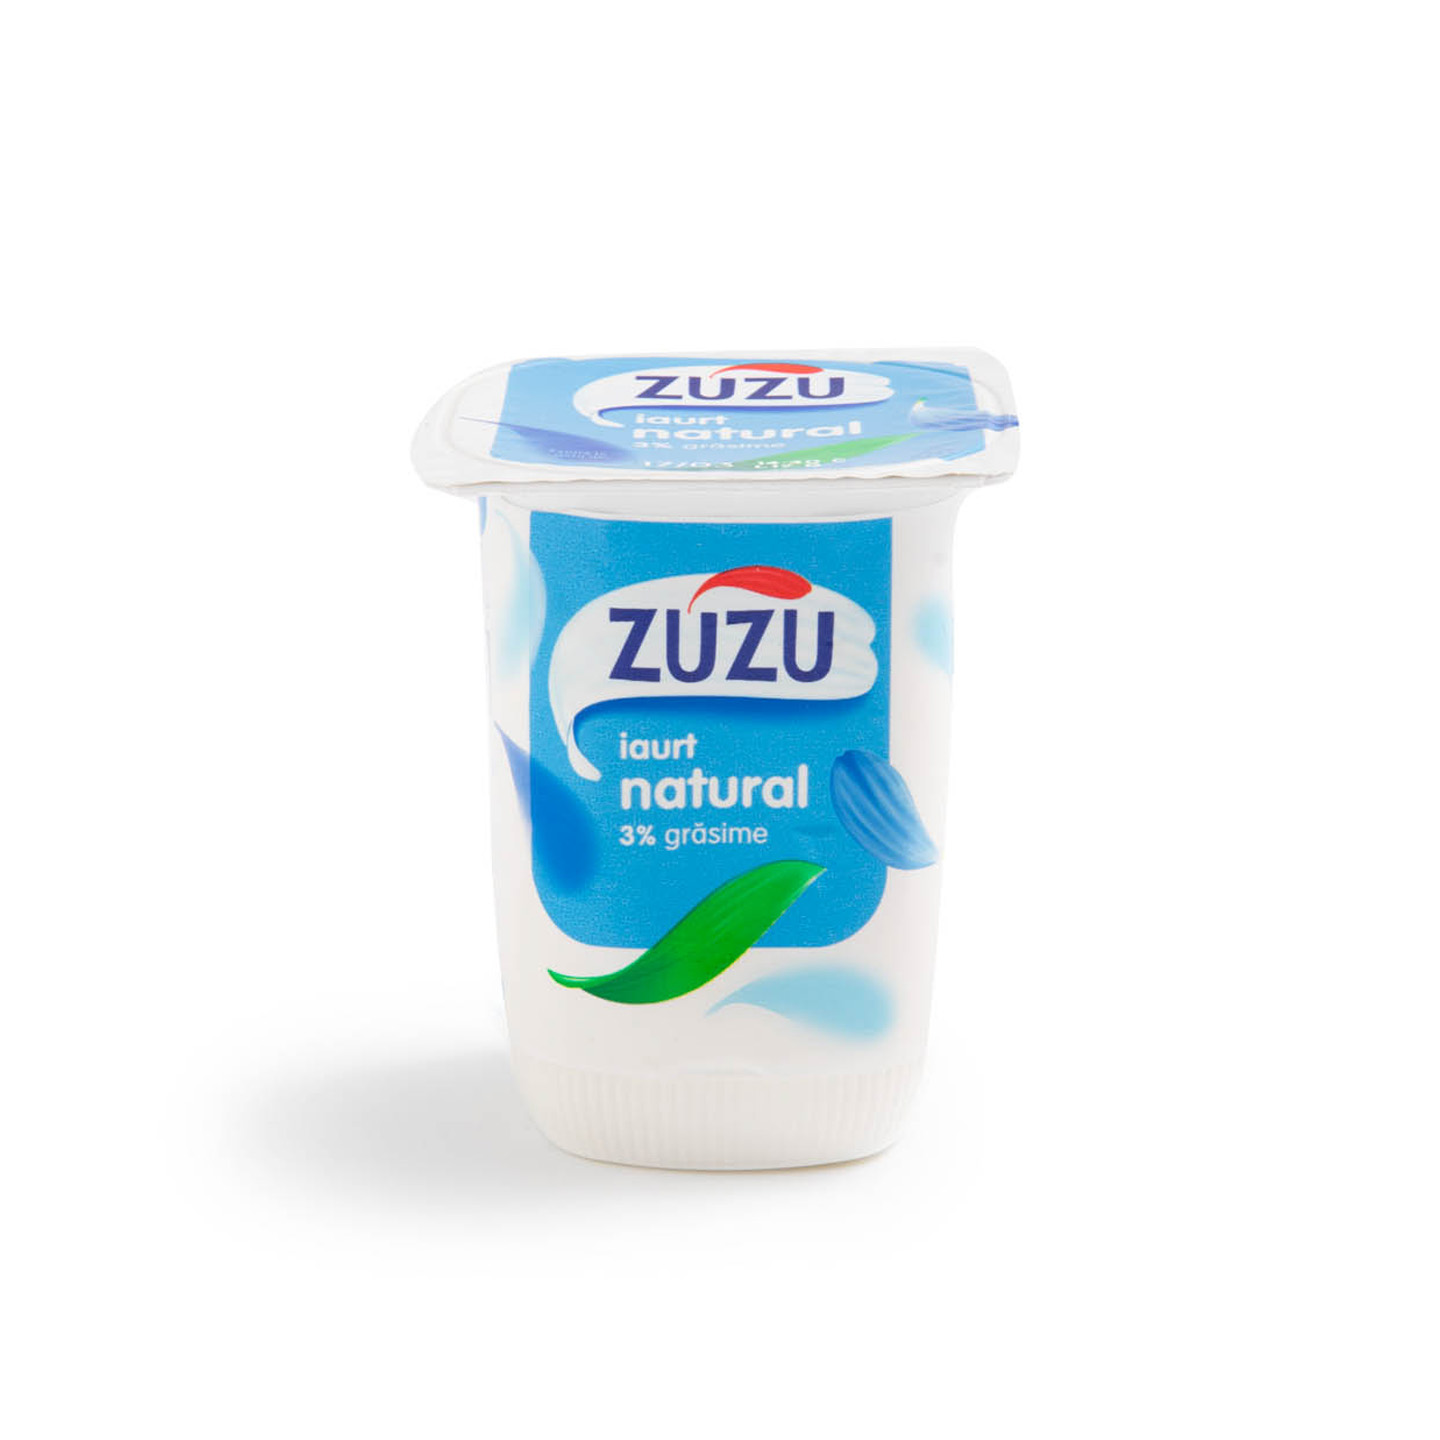 Iaurt natural 3% grăsime / degresat 0.1% grăsime Zuzu 140g